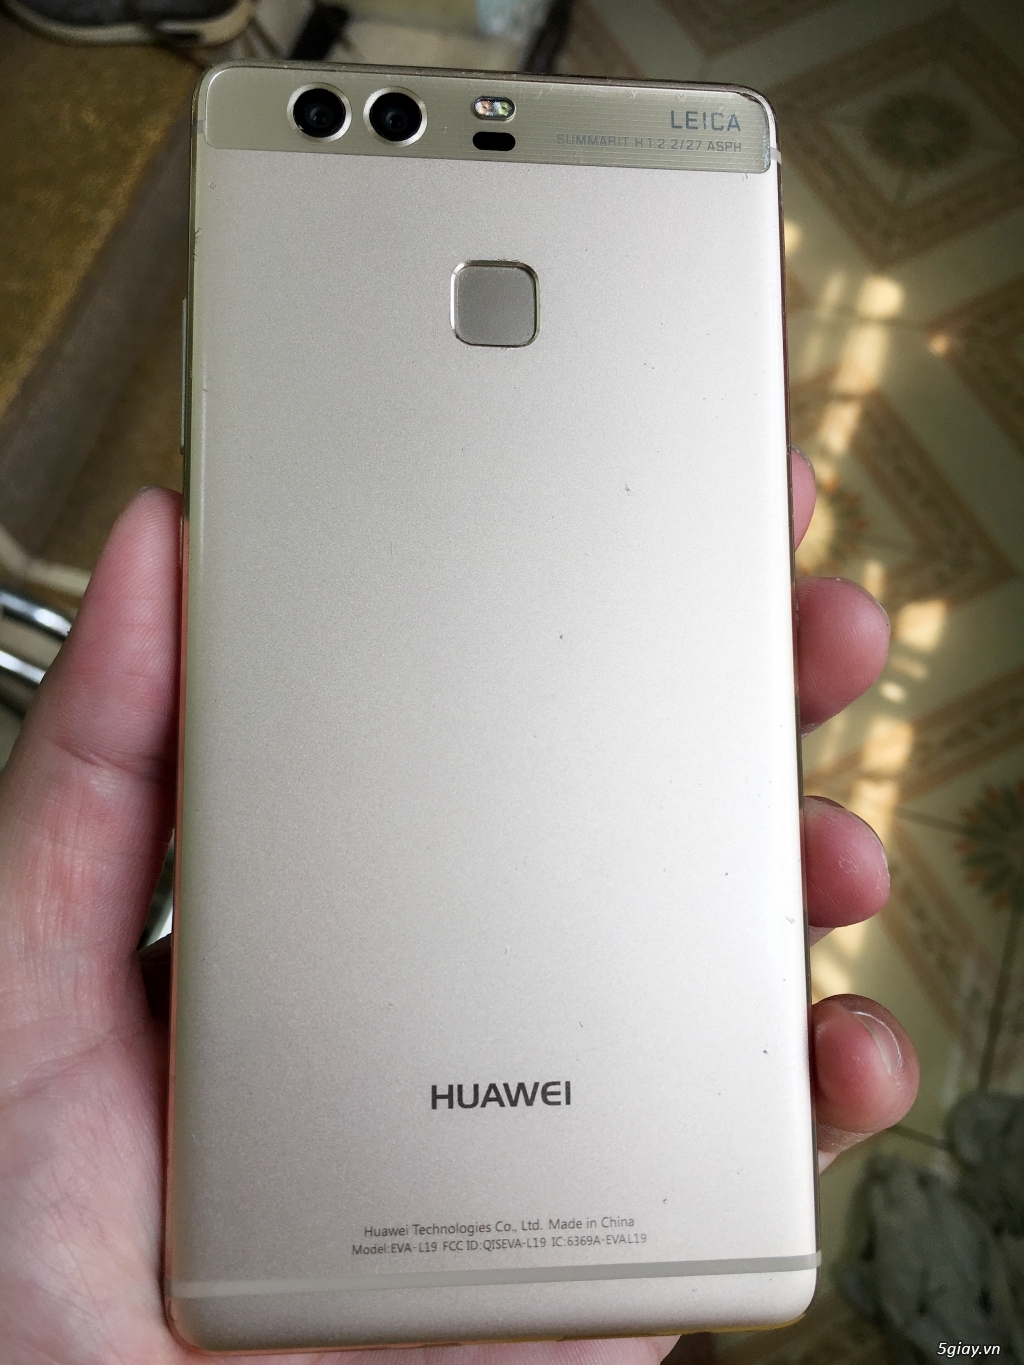 Tiễn e Huawei P9 Gold (Cty) 95% - 1